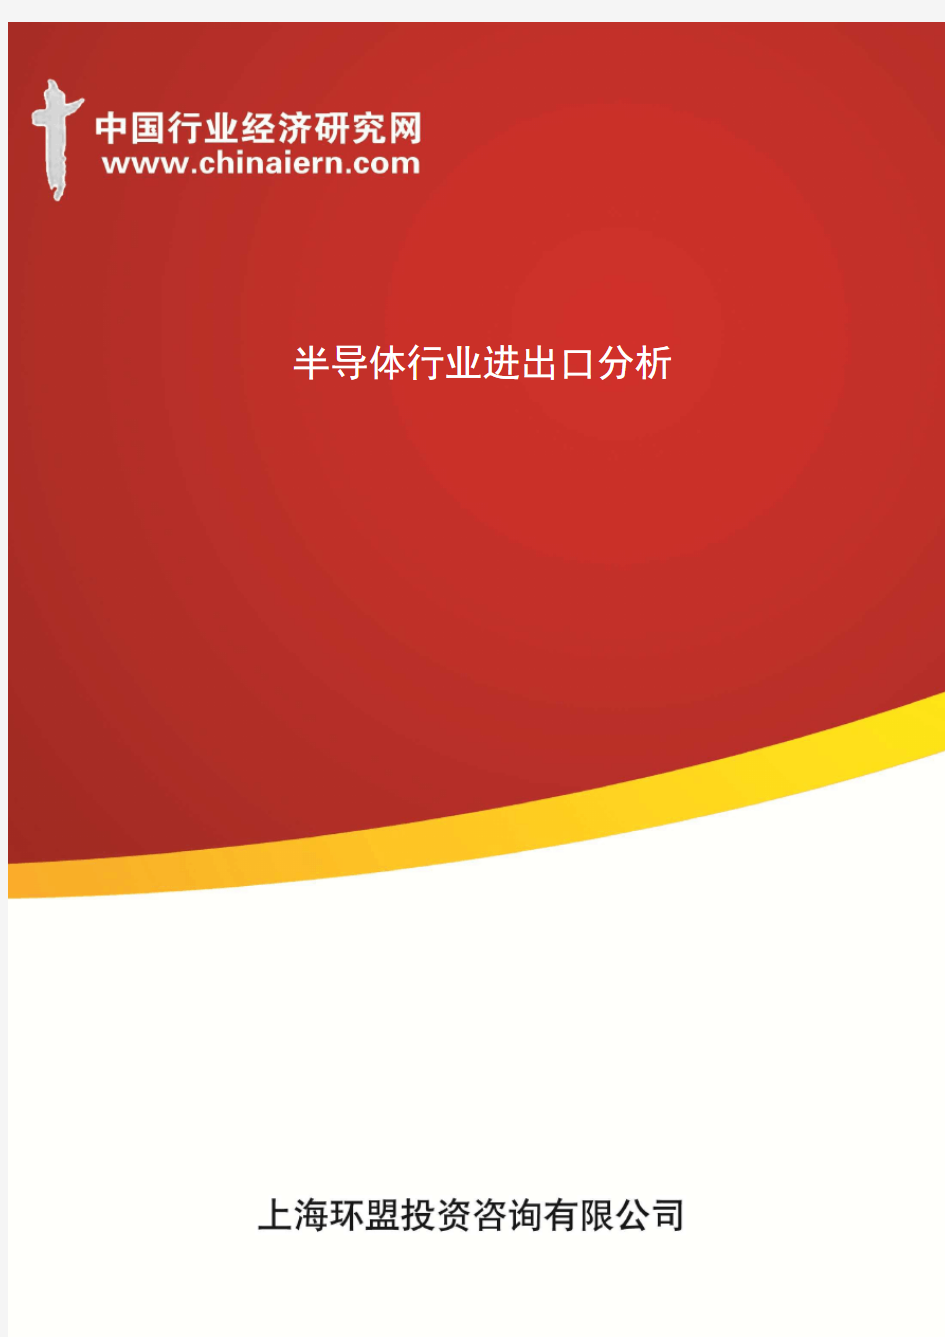 半导体行业进出口分析(上海环盟)